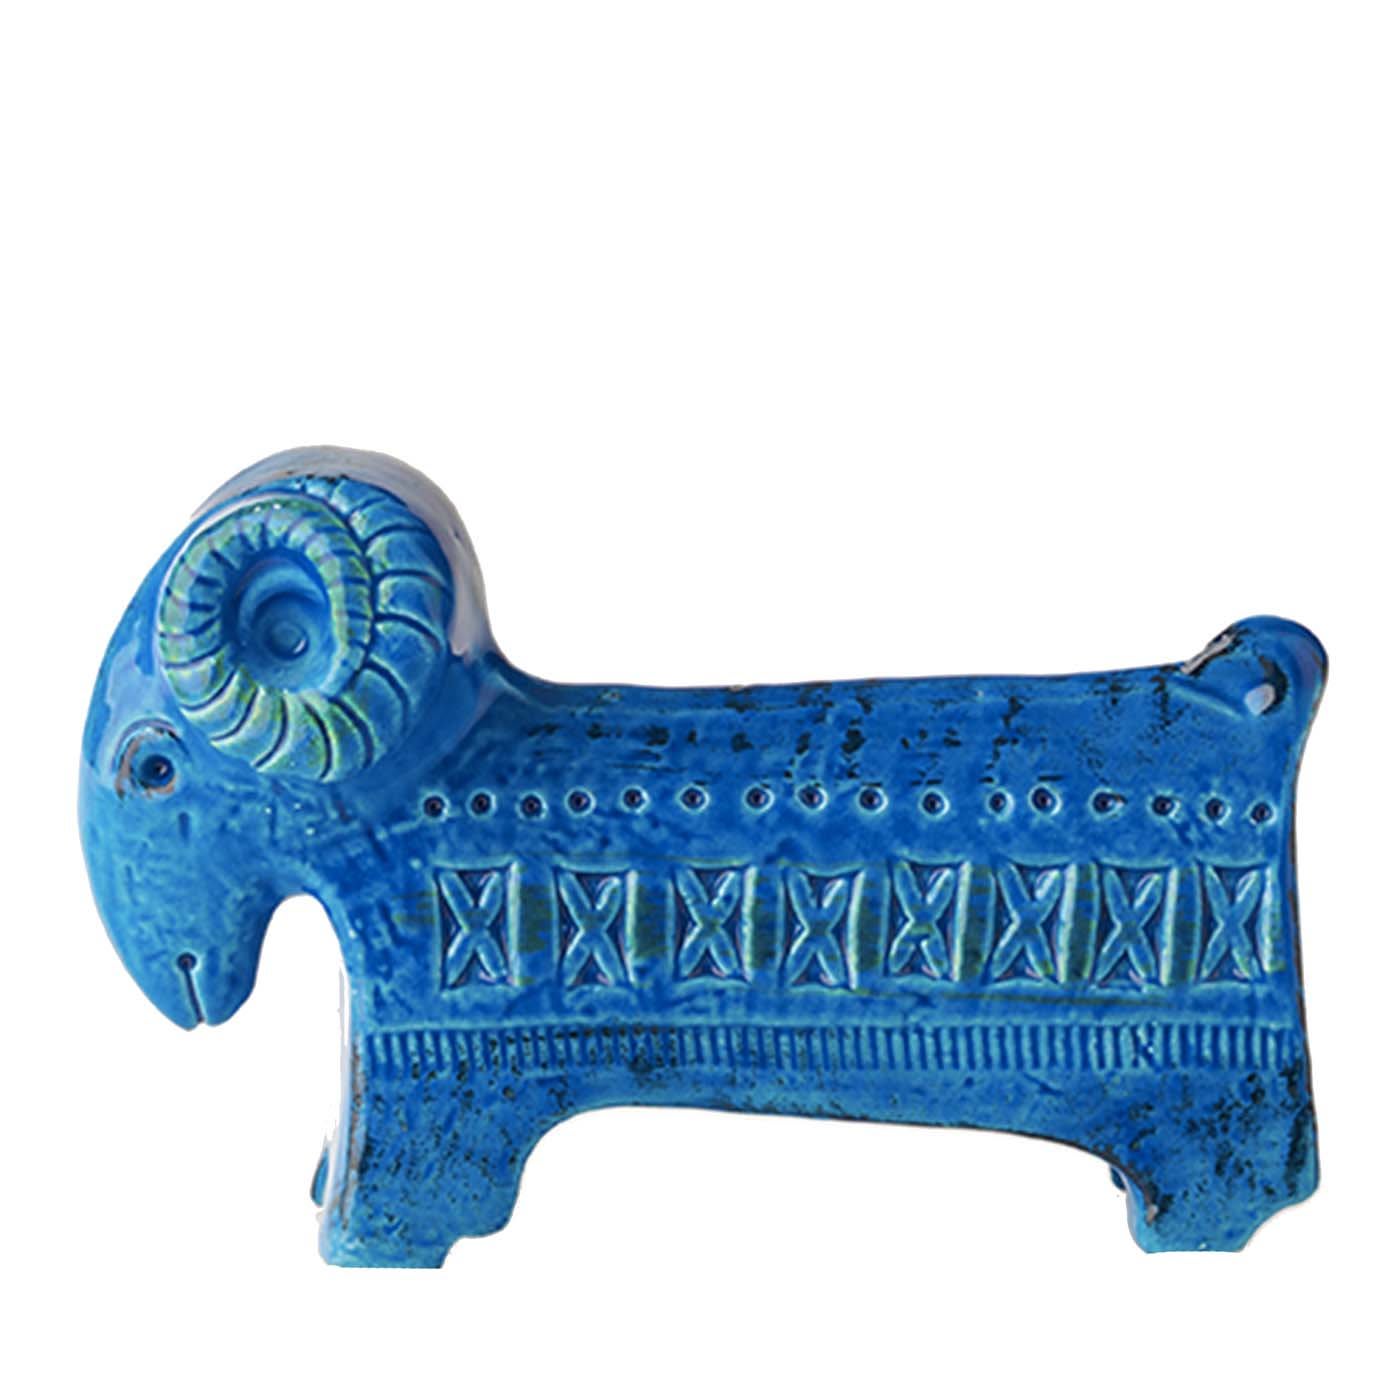 Rimini Blu Ram Figurine by Aldo Londi - Bitossi Ceramiche